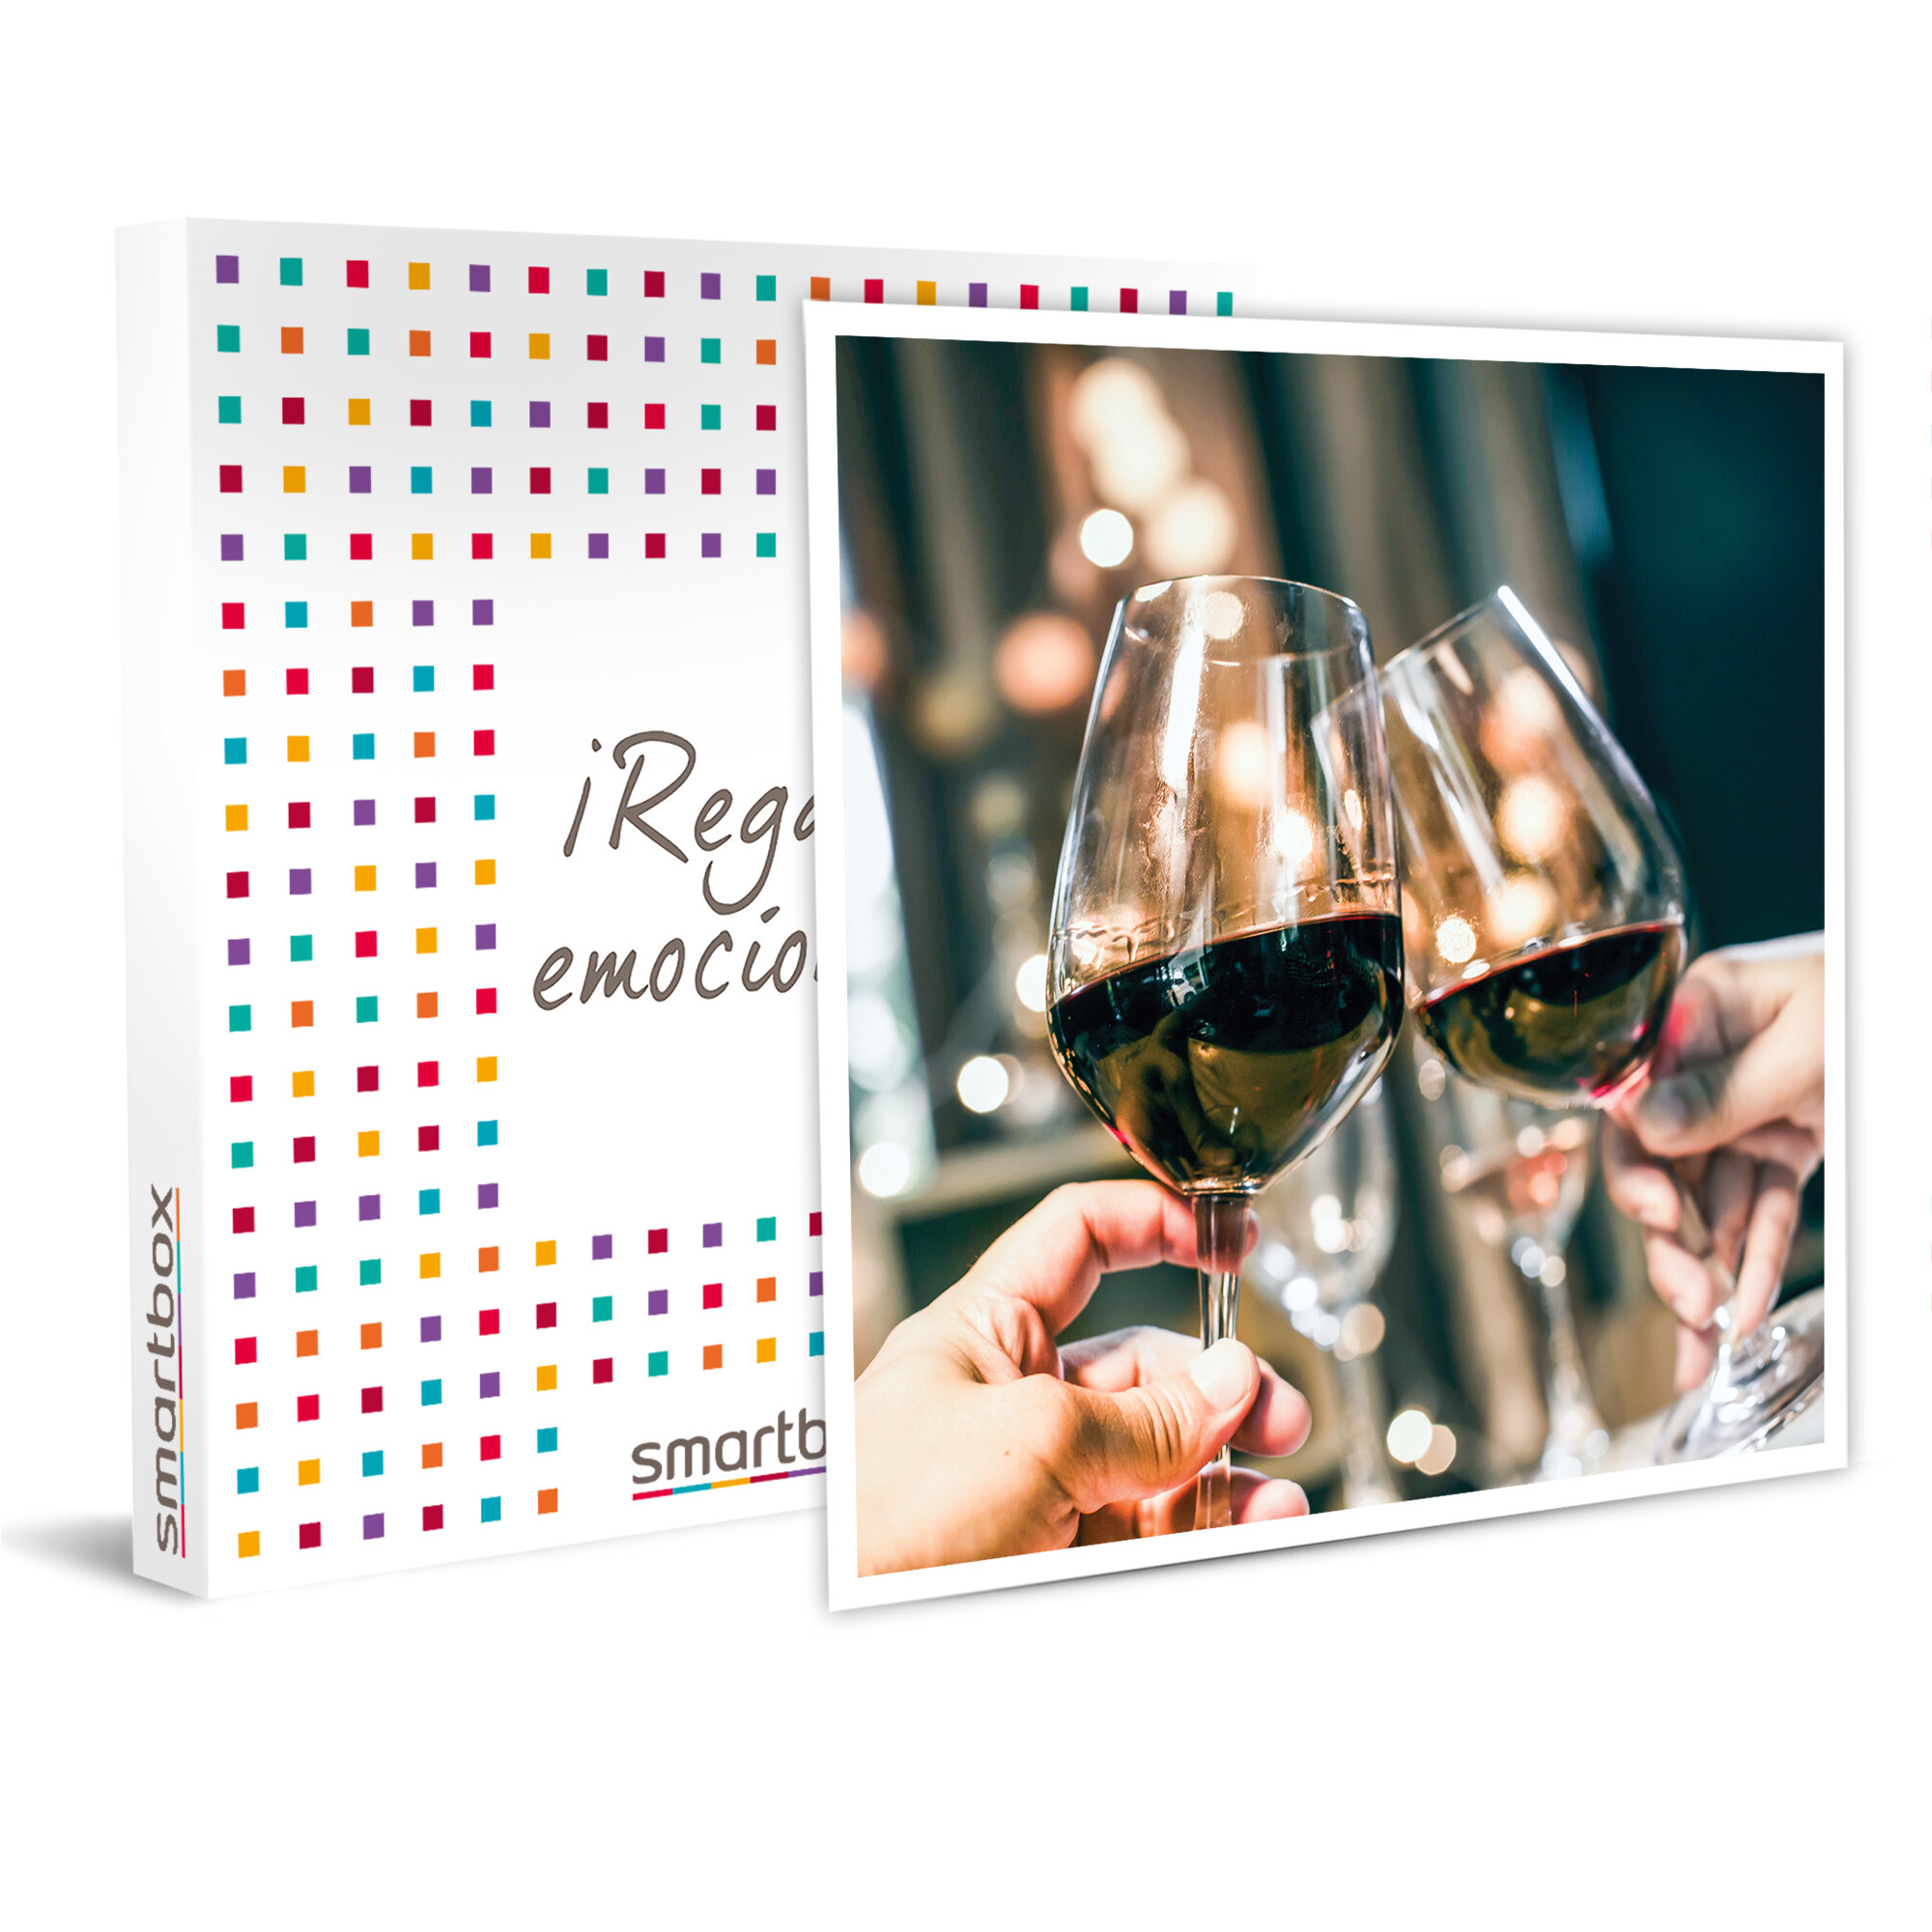 Envío de 1 caja con productos gourmet y vino D.O. Ribera del Duero